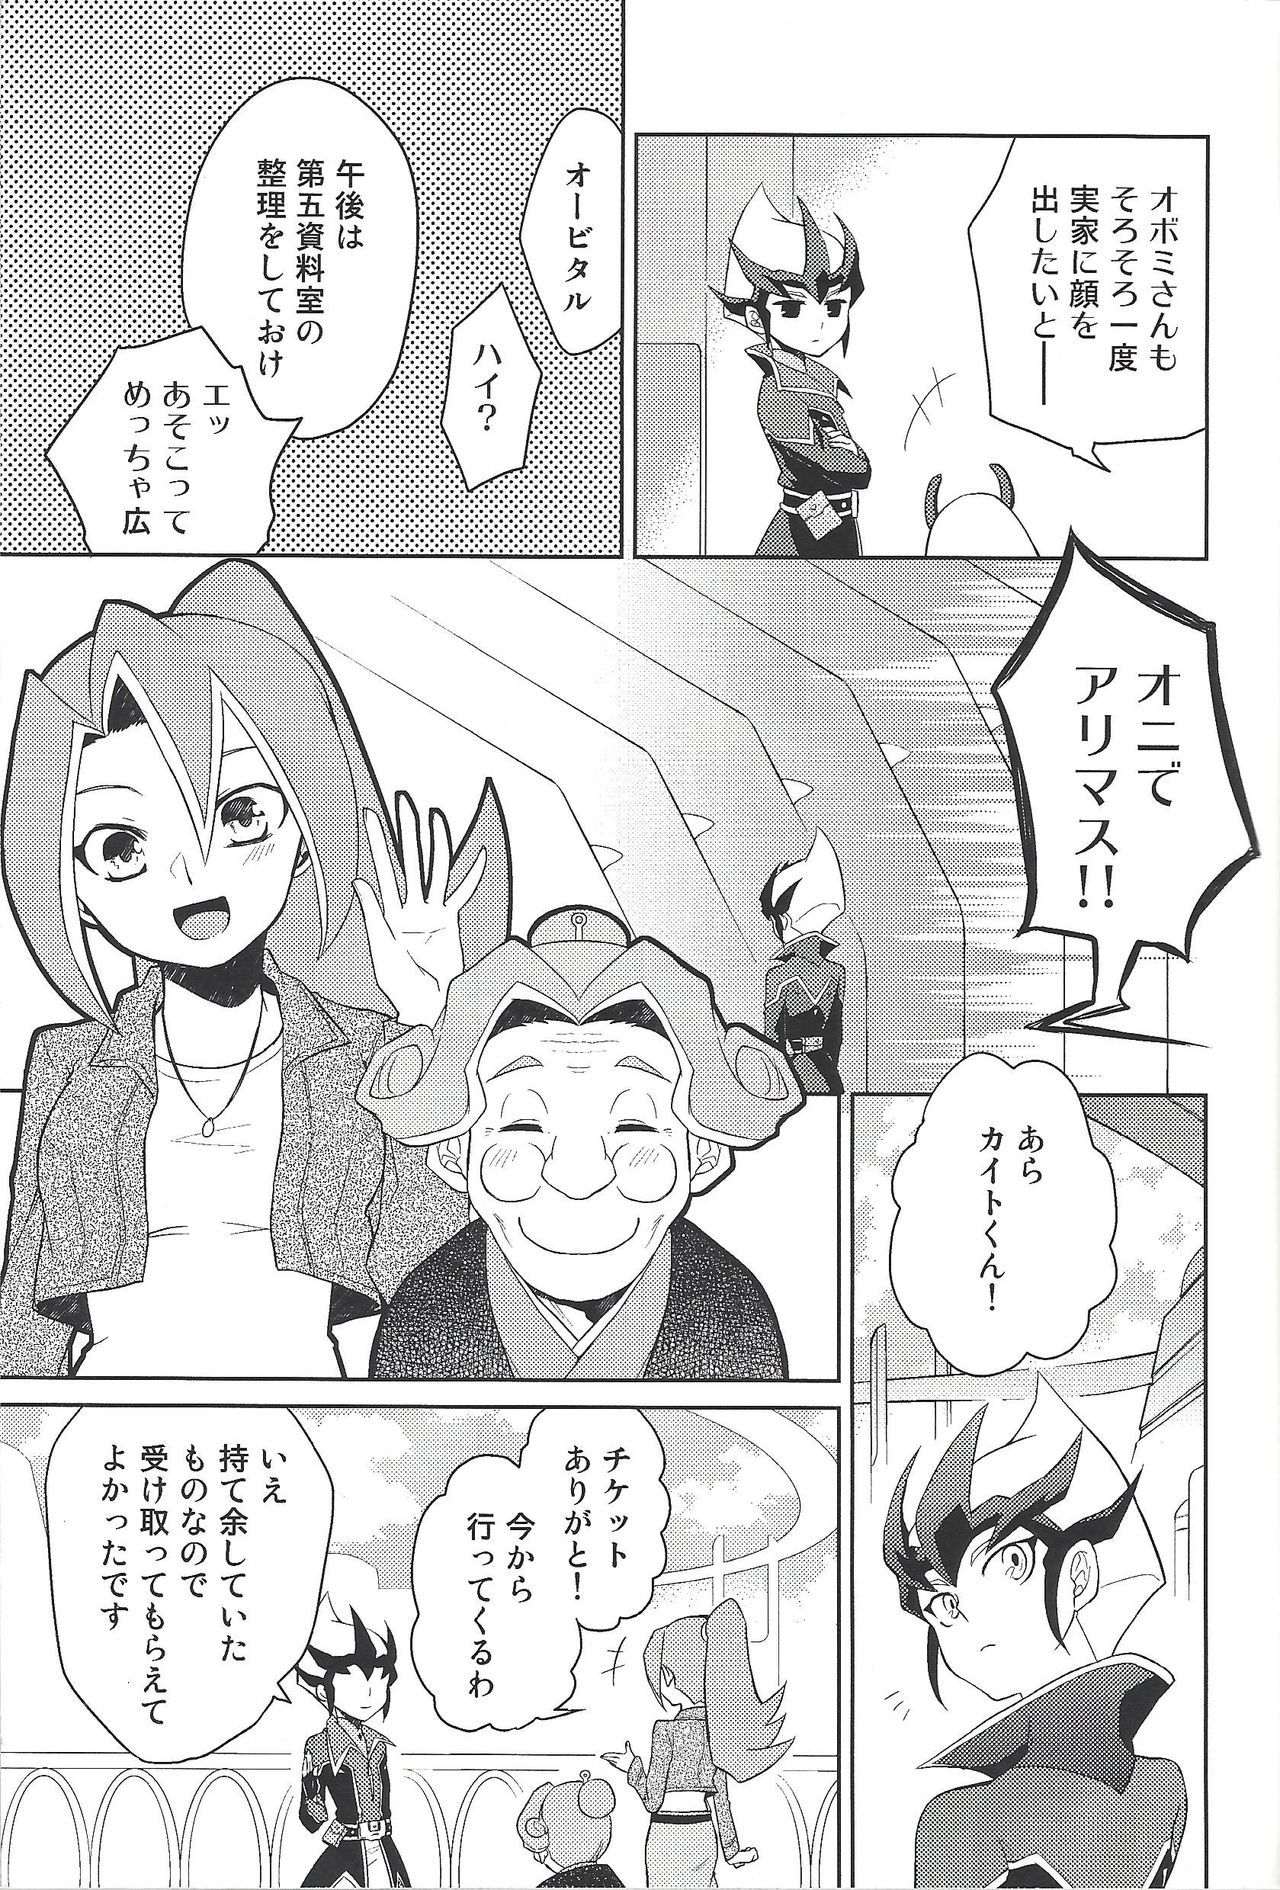 (Sennan Battle Phase 13) [G-da (kyugen)] 384400 Km-saki no hana o taoru (Yu-Gi-Oh! ZEXAL) page 8 full